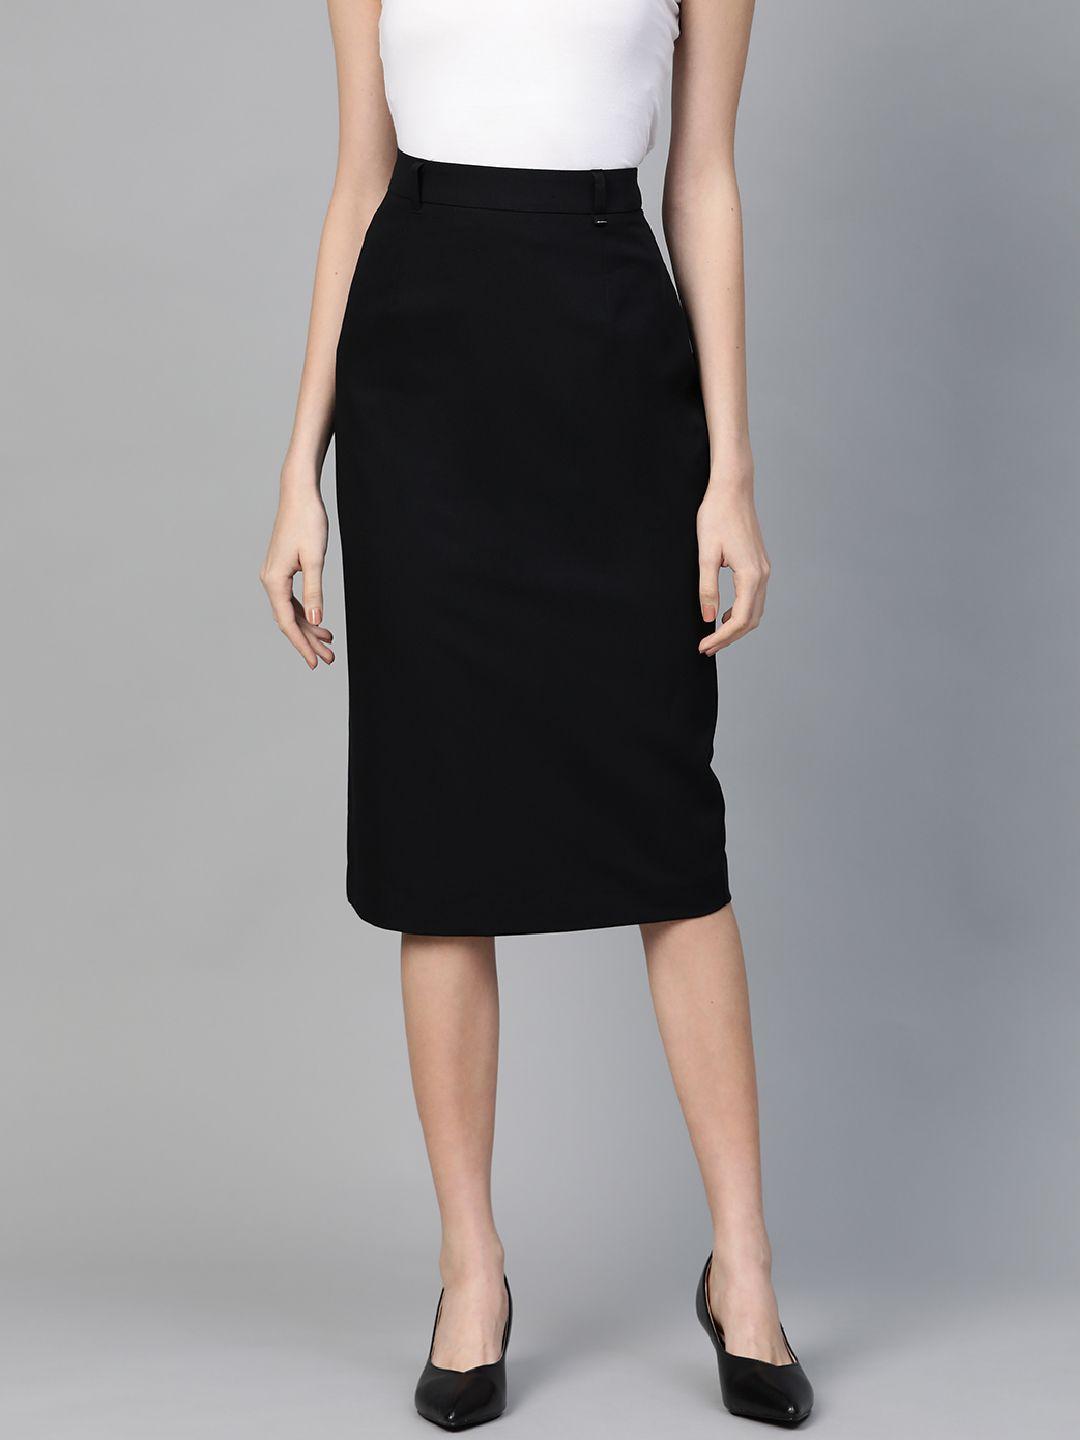 dorothy-perkins-women-black-solid-straight-skirt